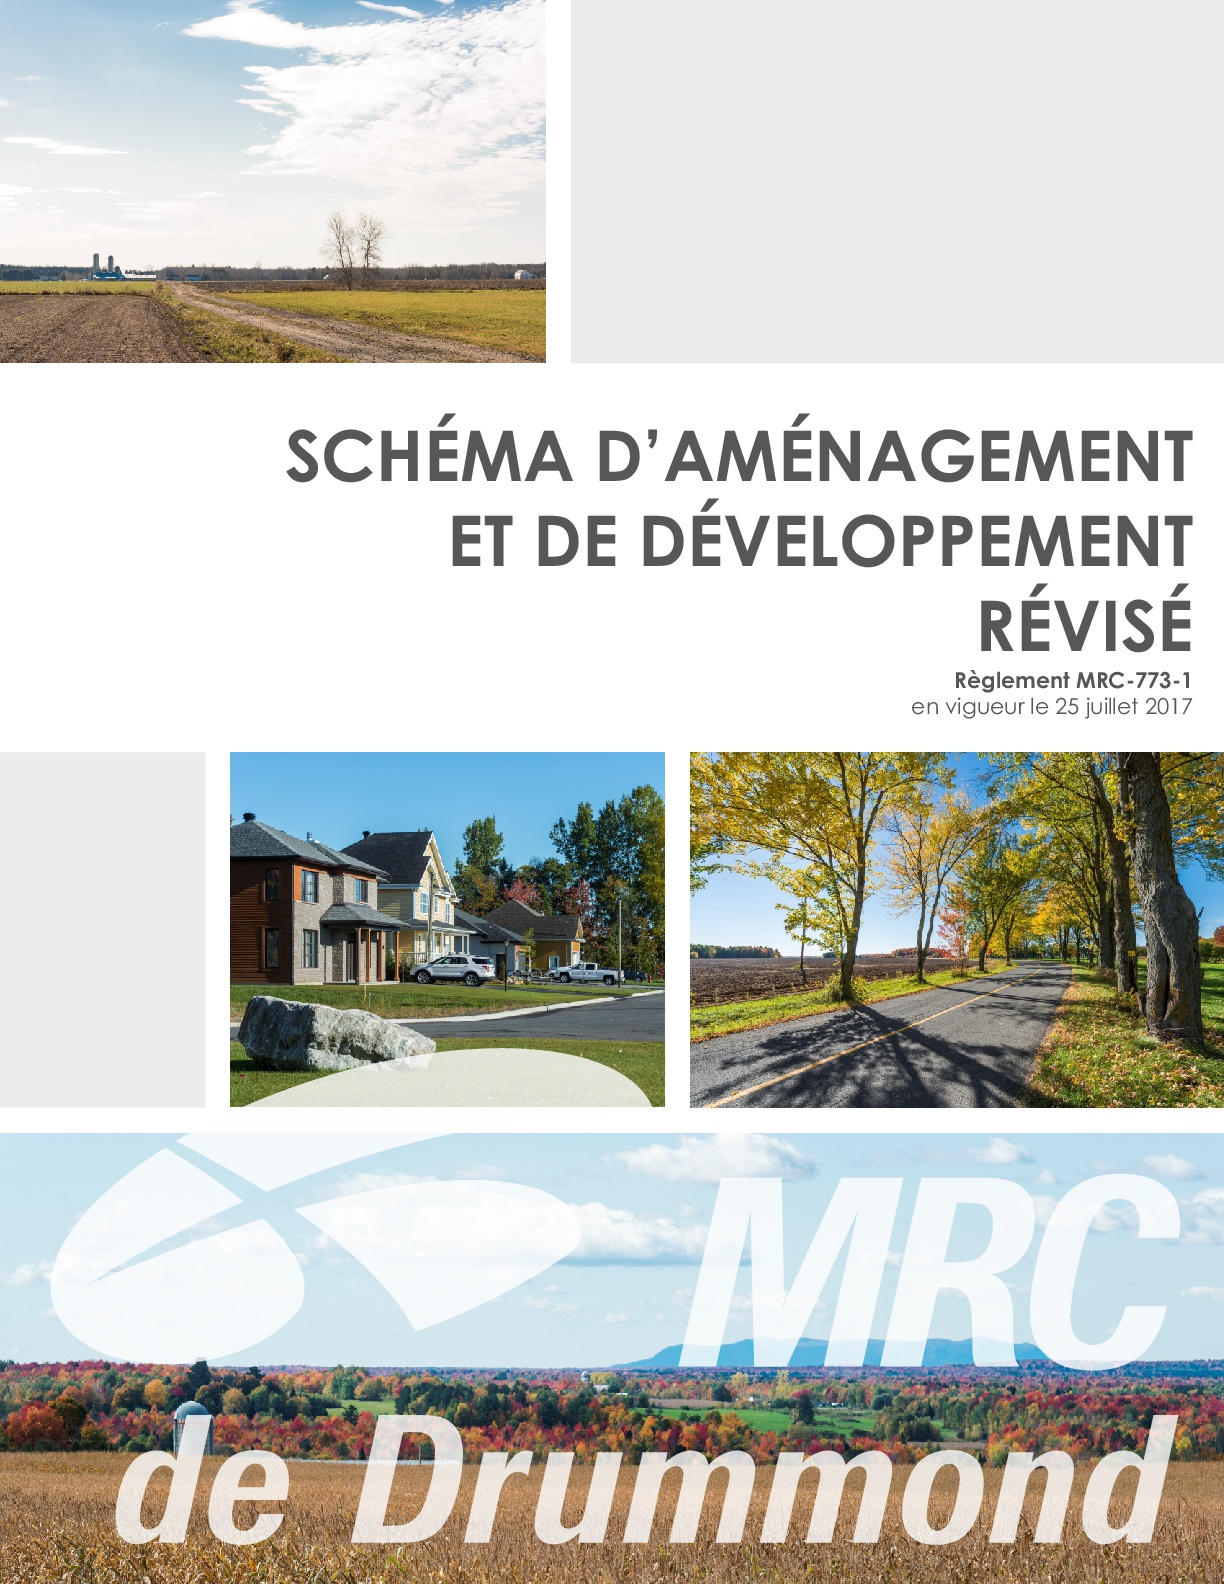 Le schéma d’aménagement et de développement révisé maintenant en vigueur